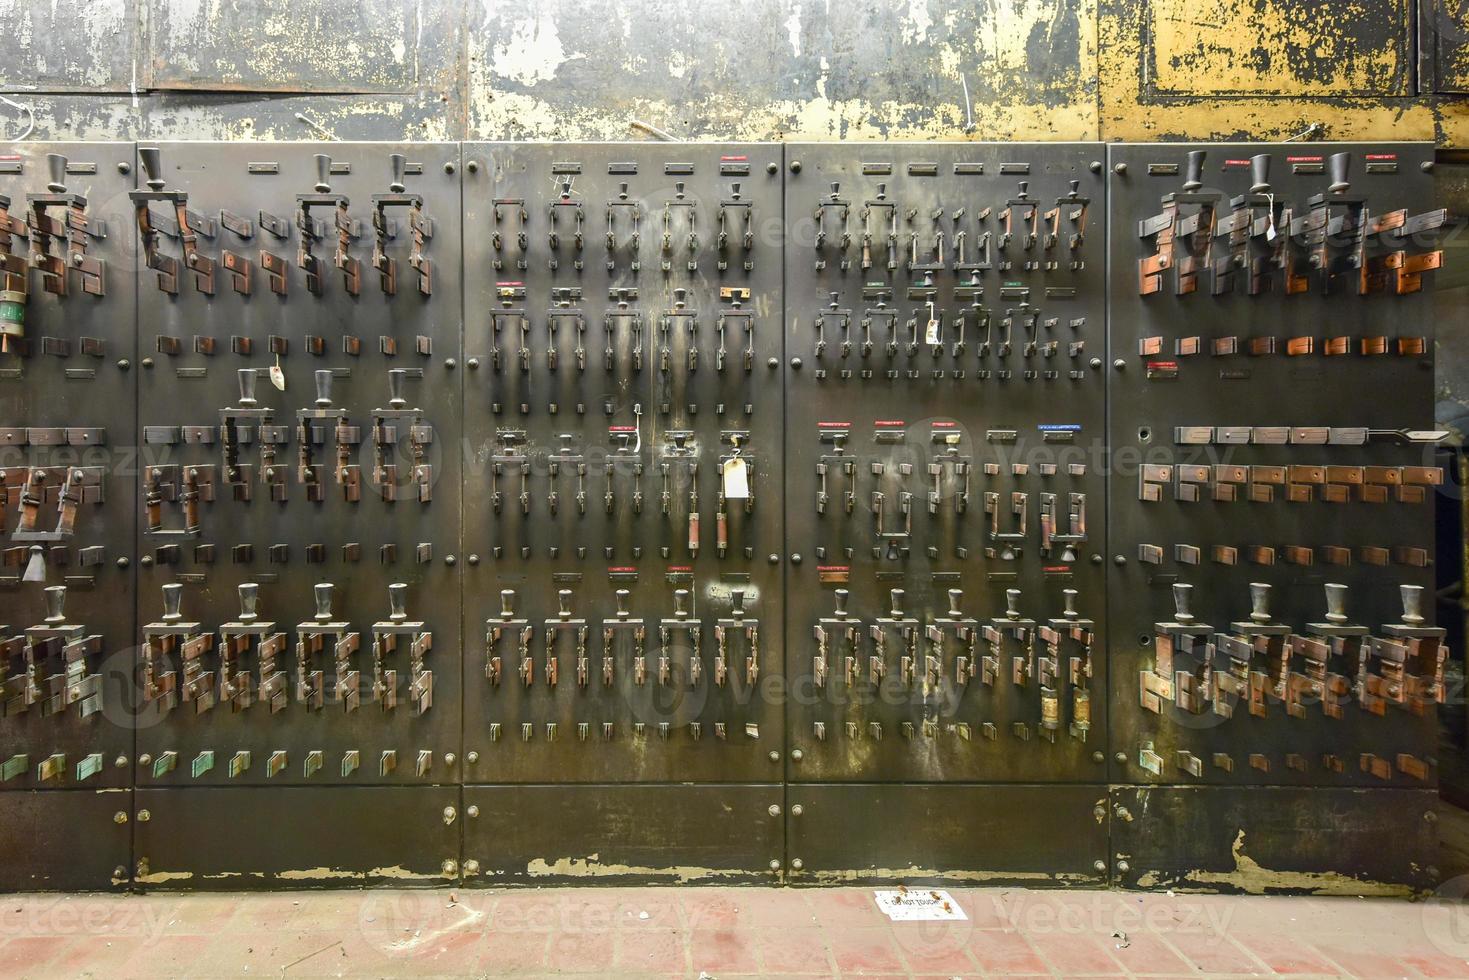 Vintage electrical breakers, fuses, handles and meters. photo